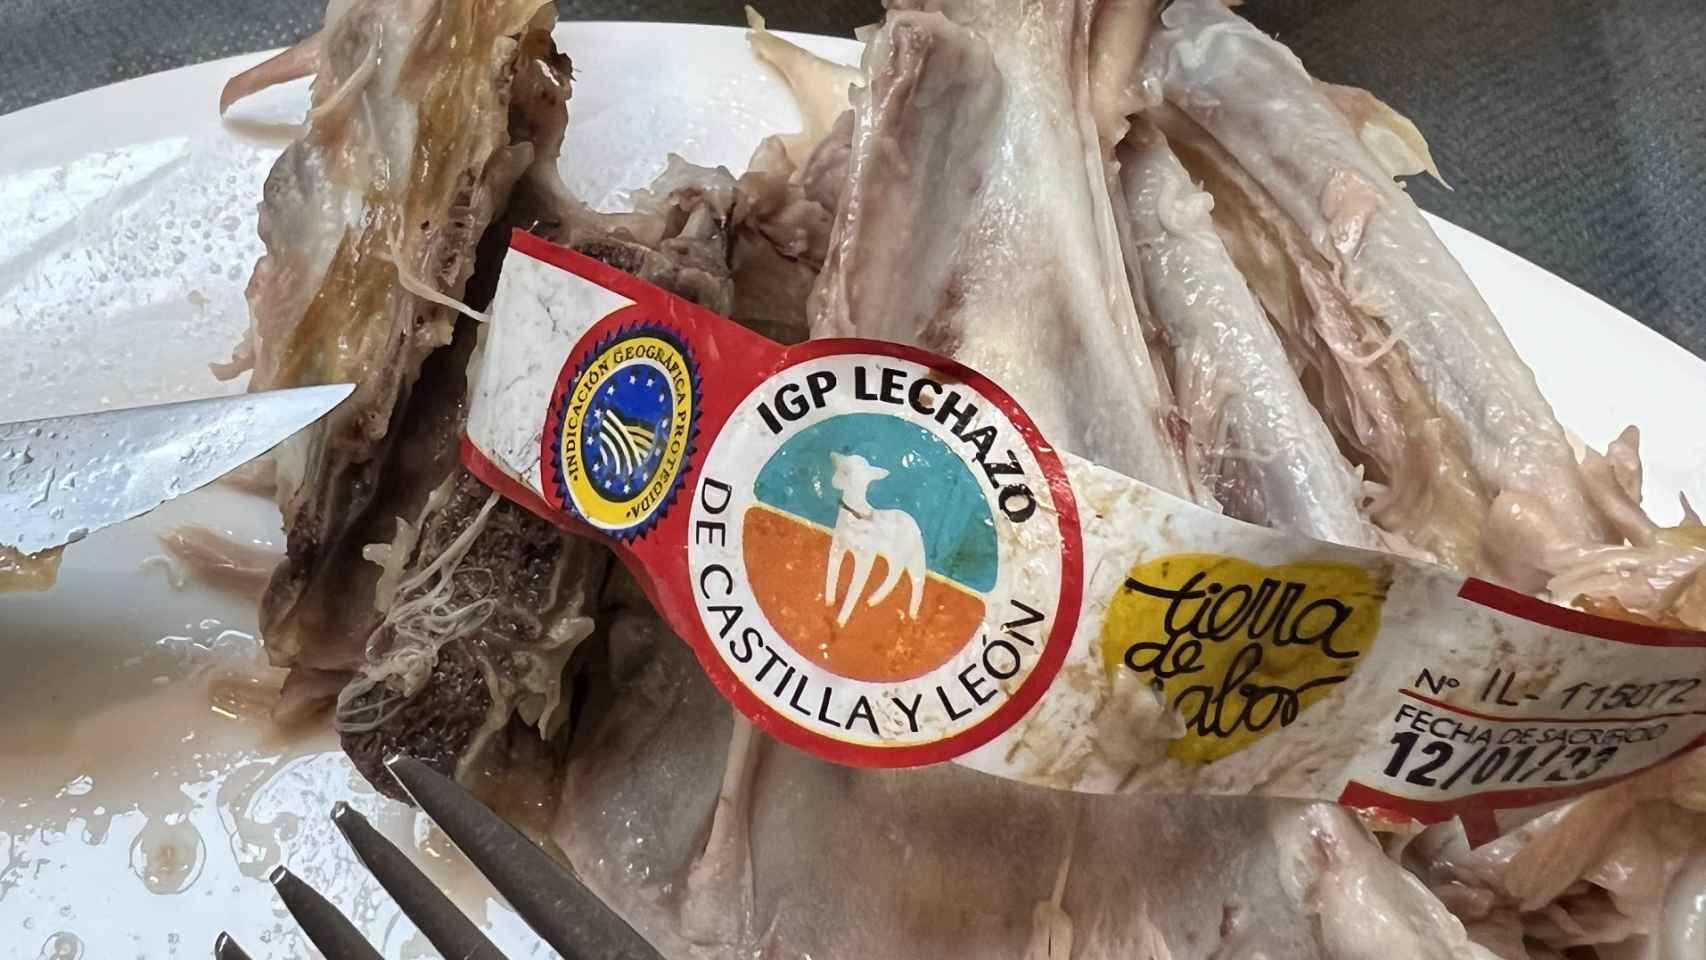 La etiqueta que identifica la IGP lechazo de Castilla y León